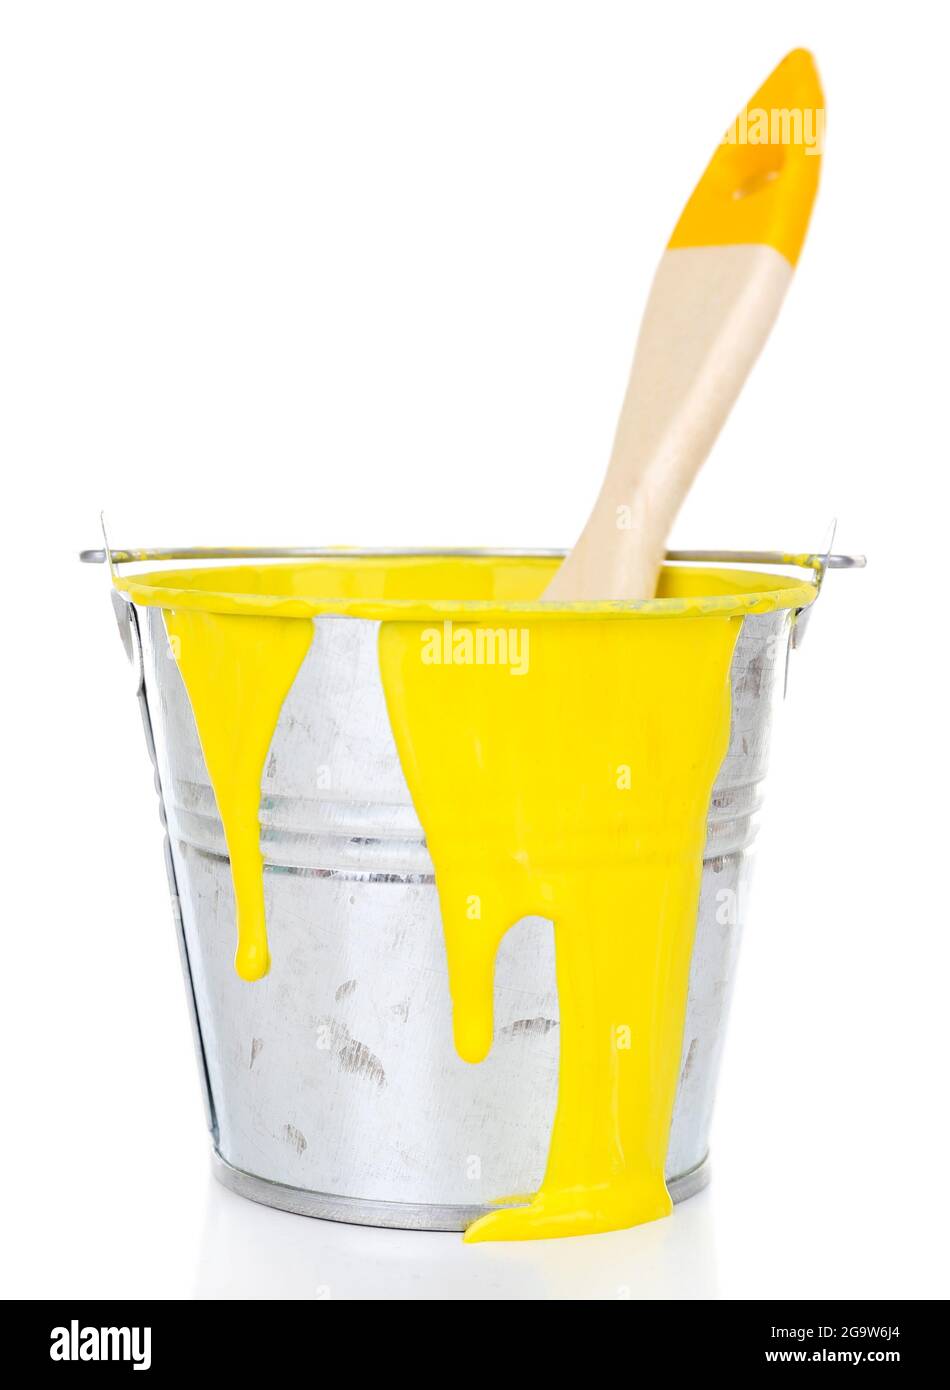 Eimer gelbe Farbe mit Pinsel isoliert auf weißem Stockfotografie - Alamy